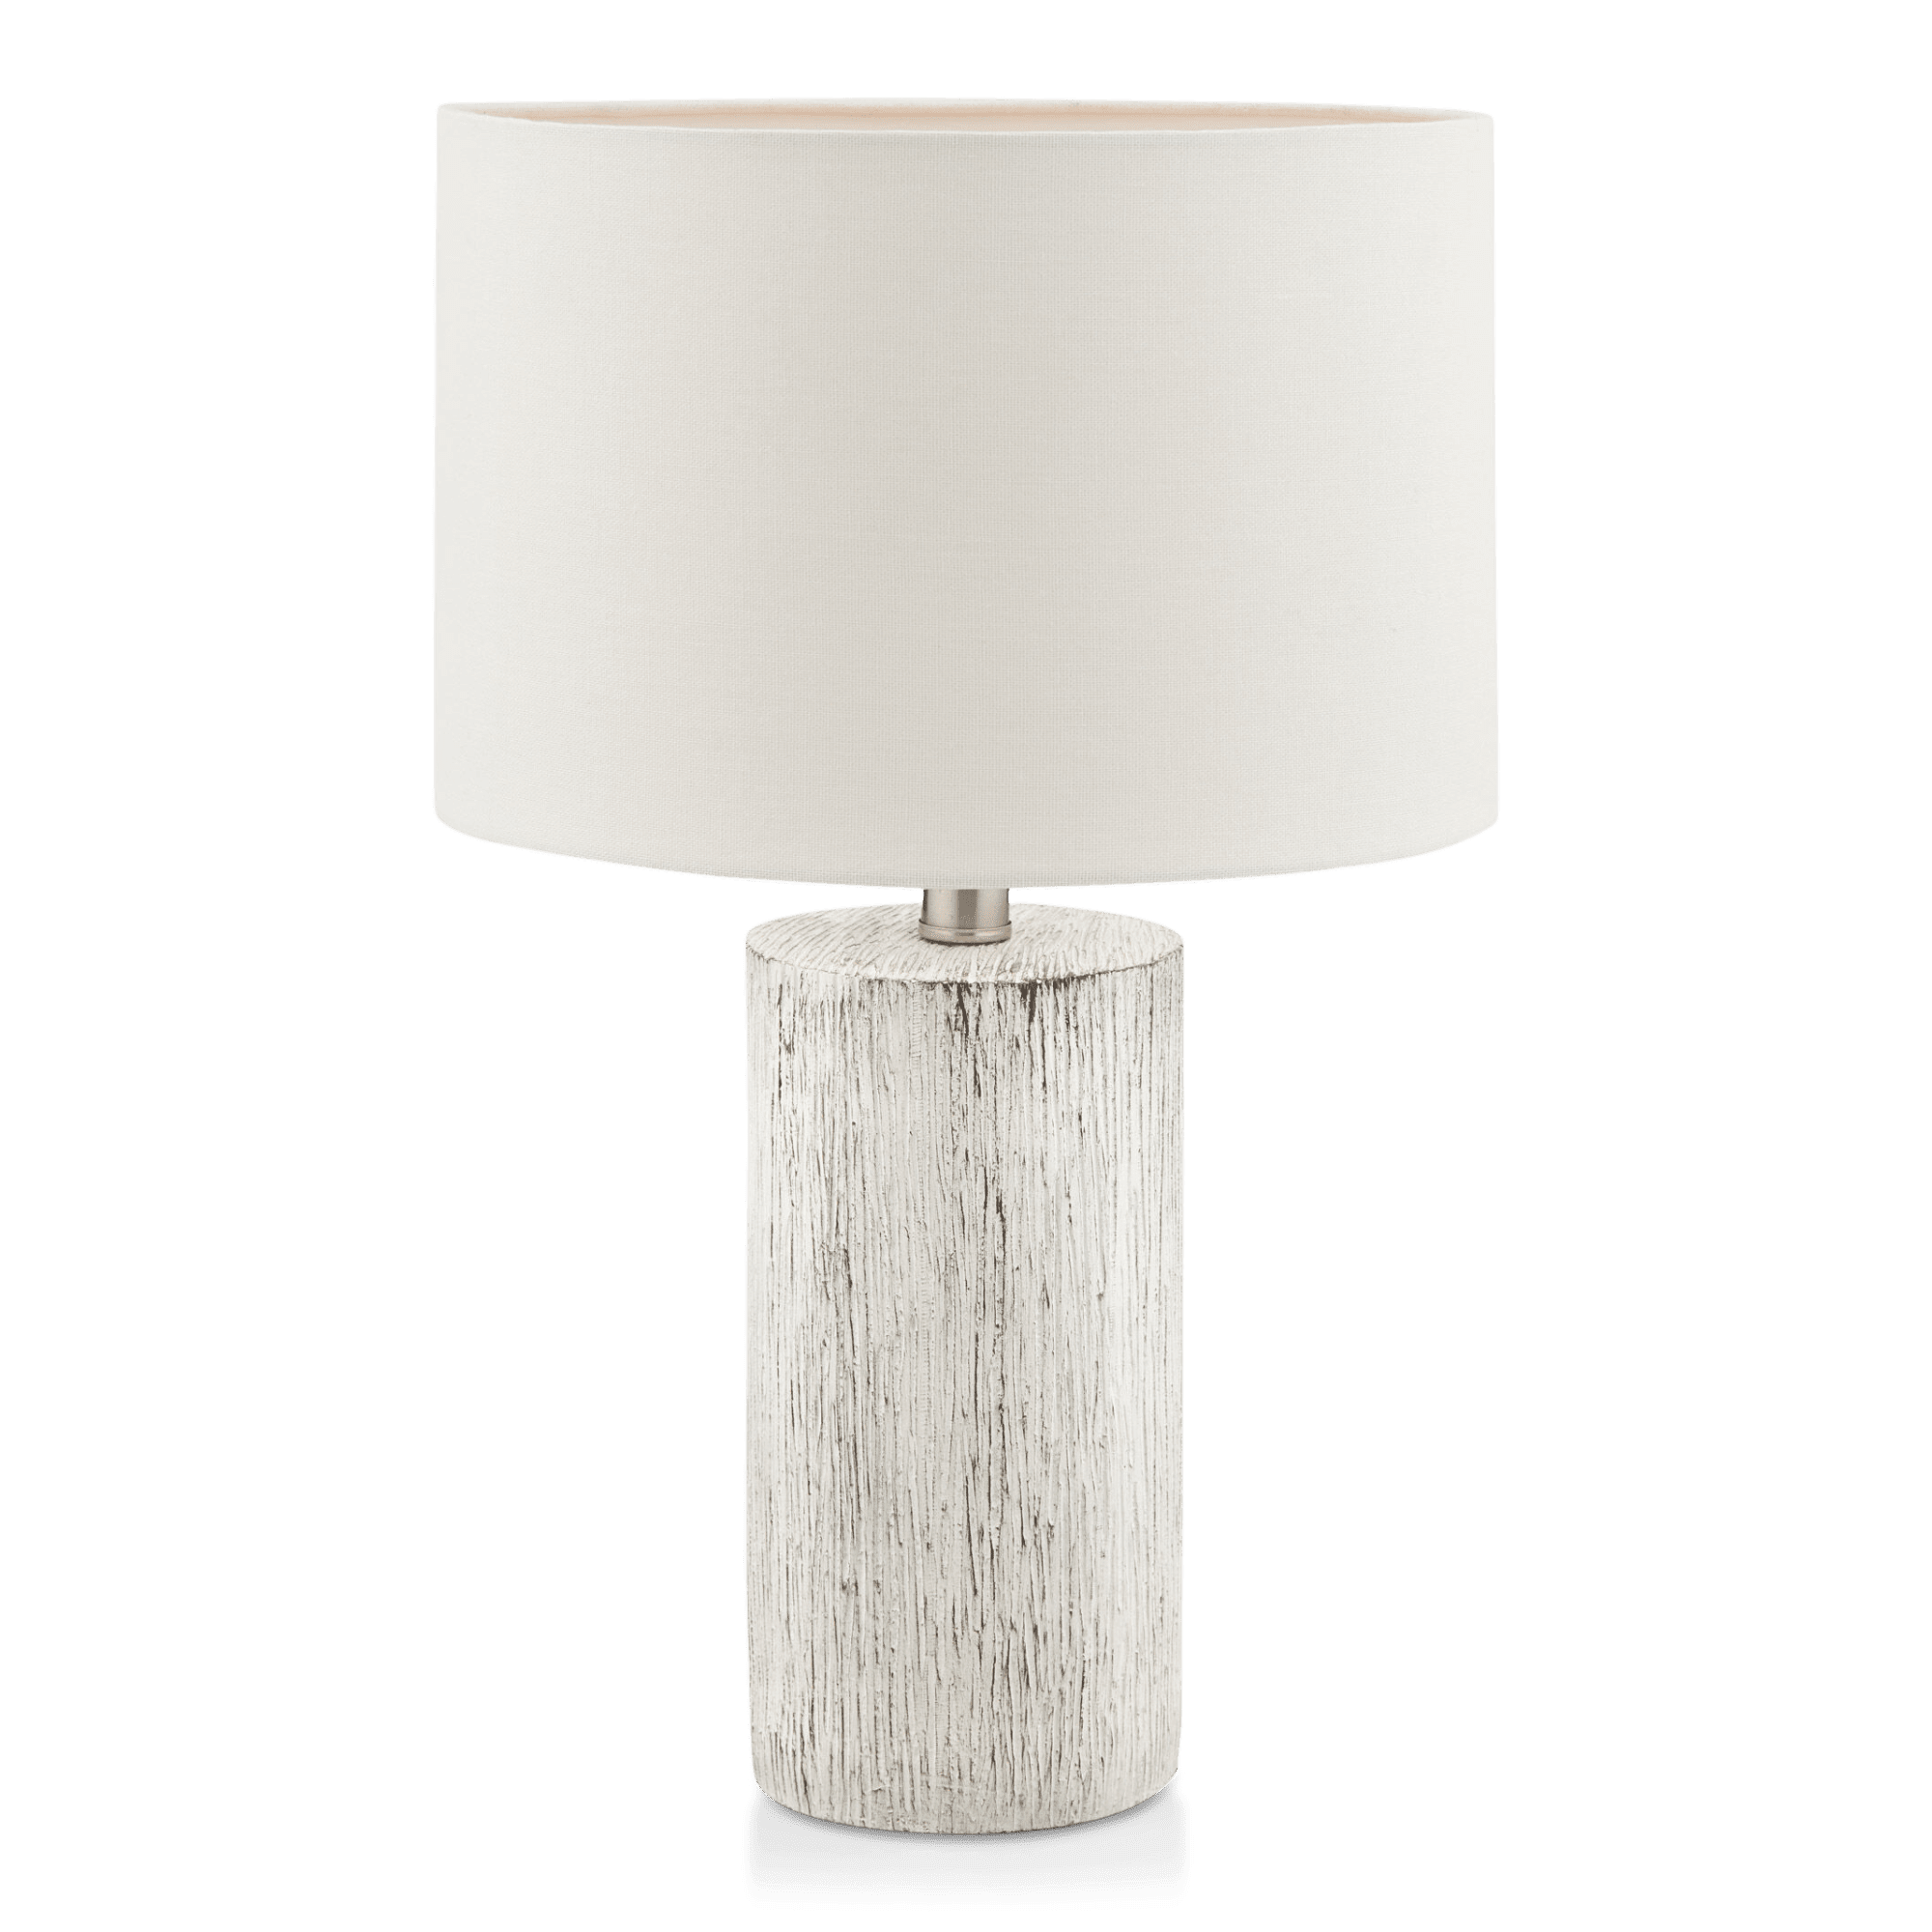 Wood-Like Table Lamp